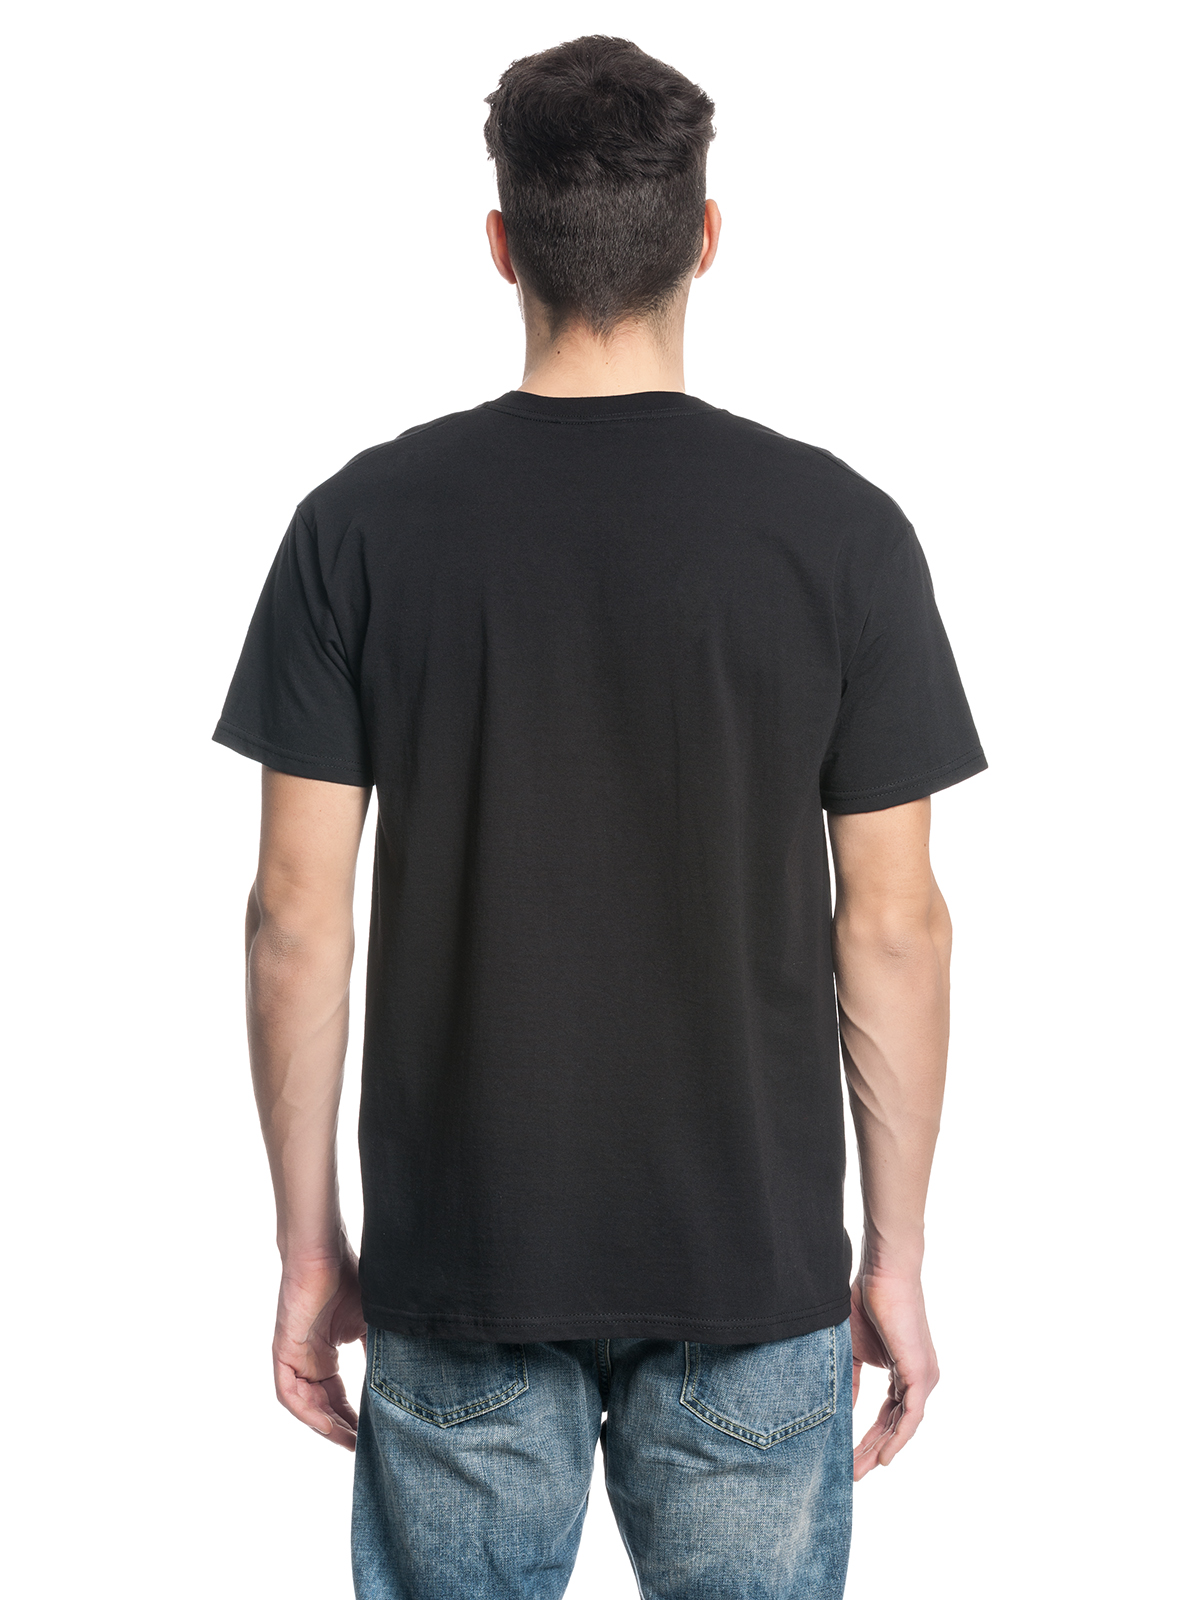 Dragon Ball Z Songoku On Fire Männer T-Shirt günstig online kaufen